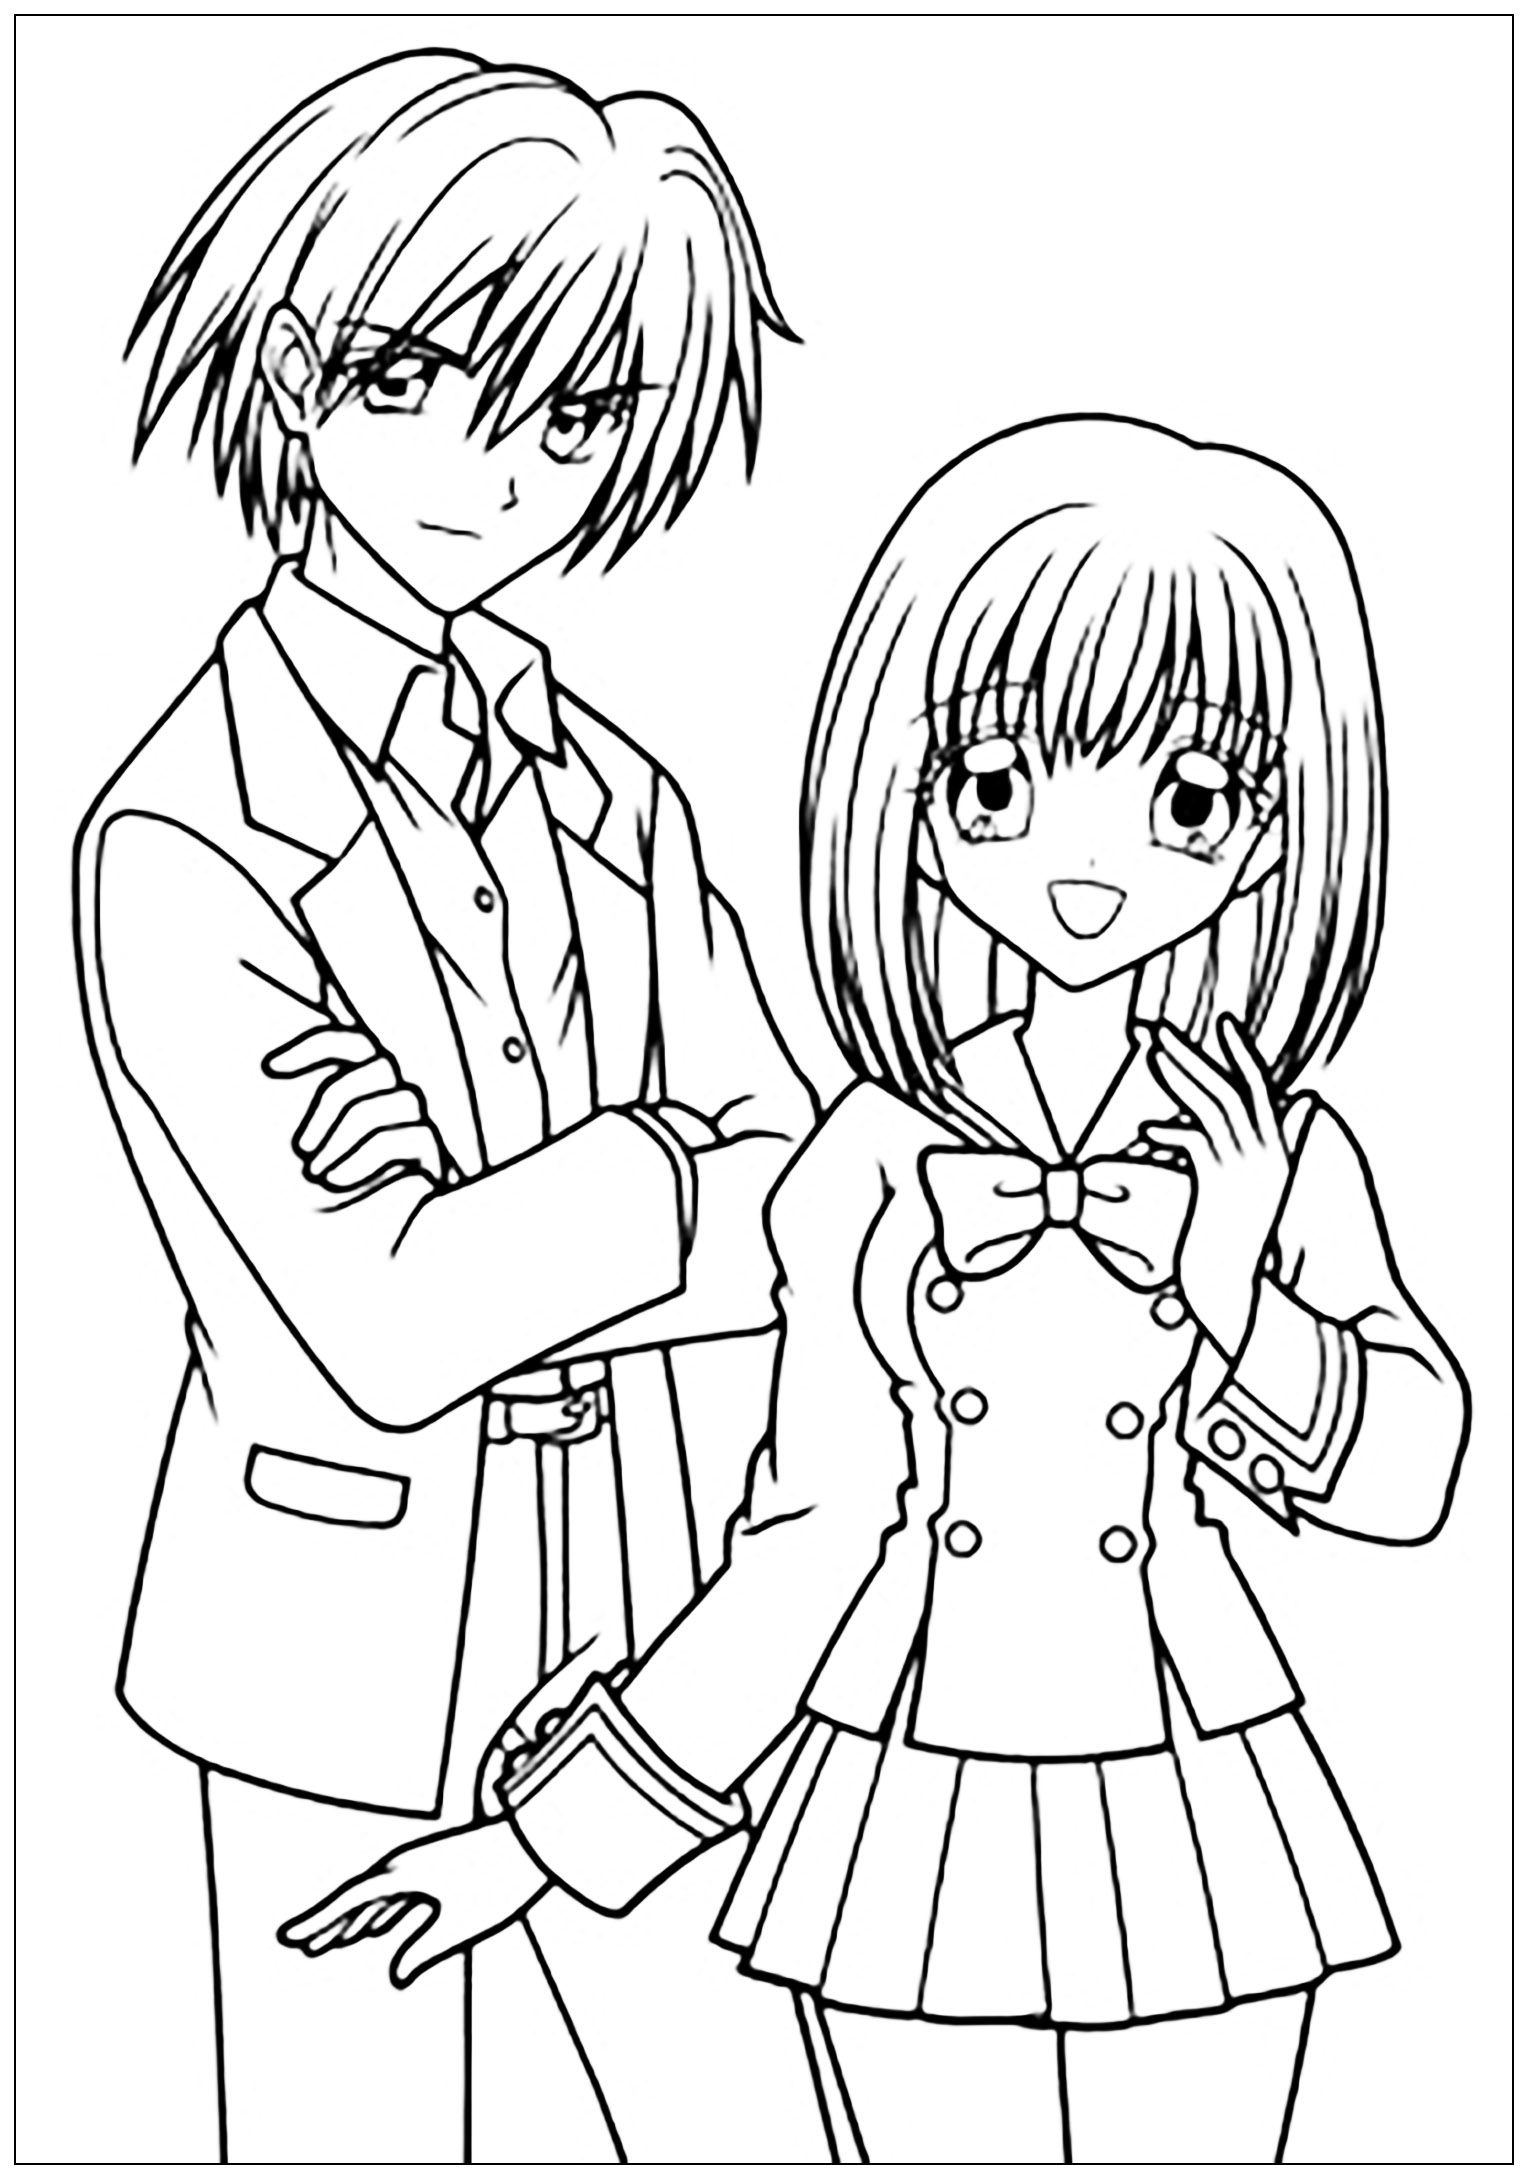 Garcon et fille manga tenue scolaire - Mangas / Animés - Coloriages difficiles pour adultes